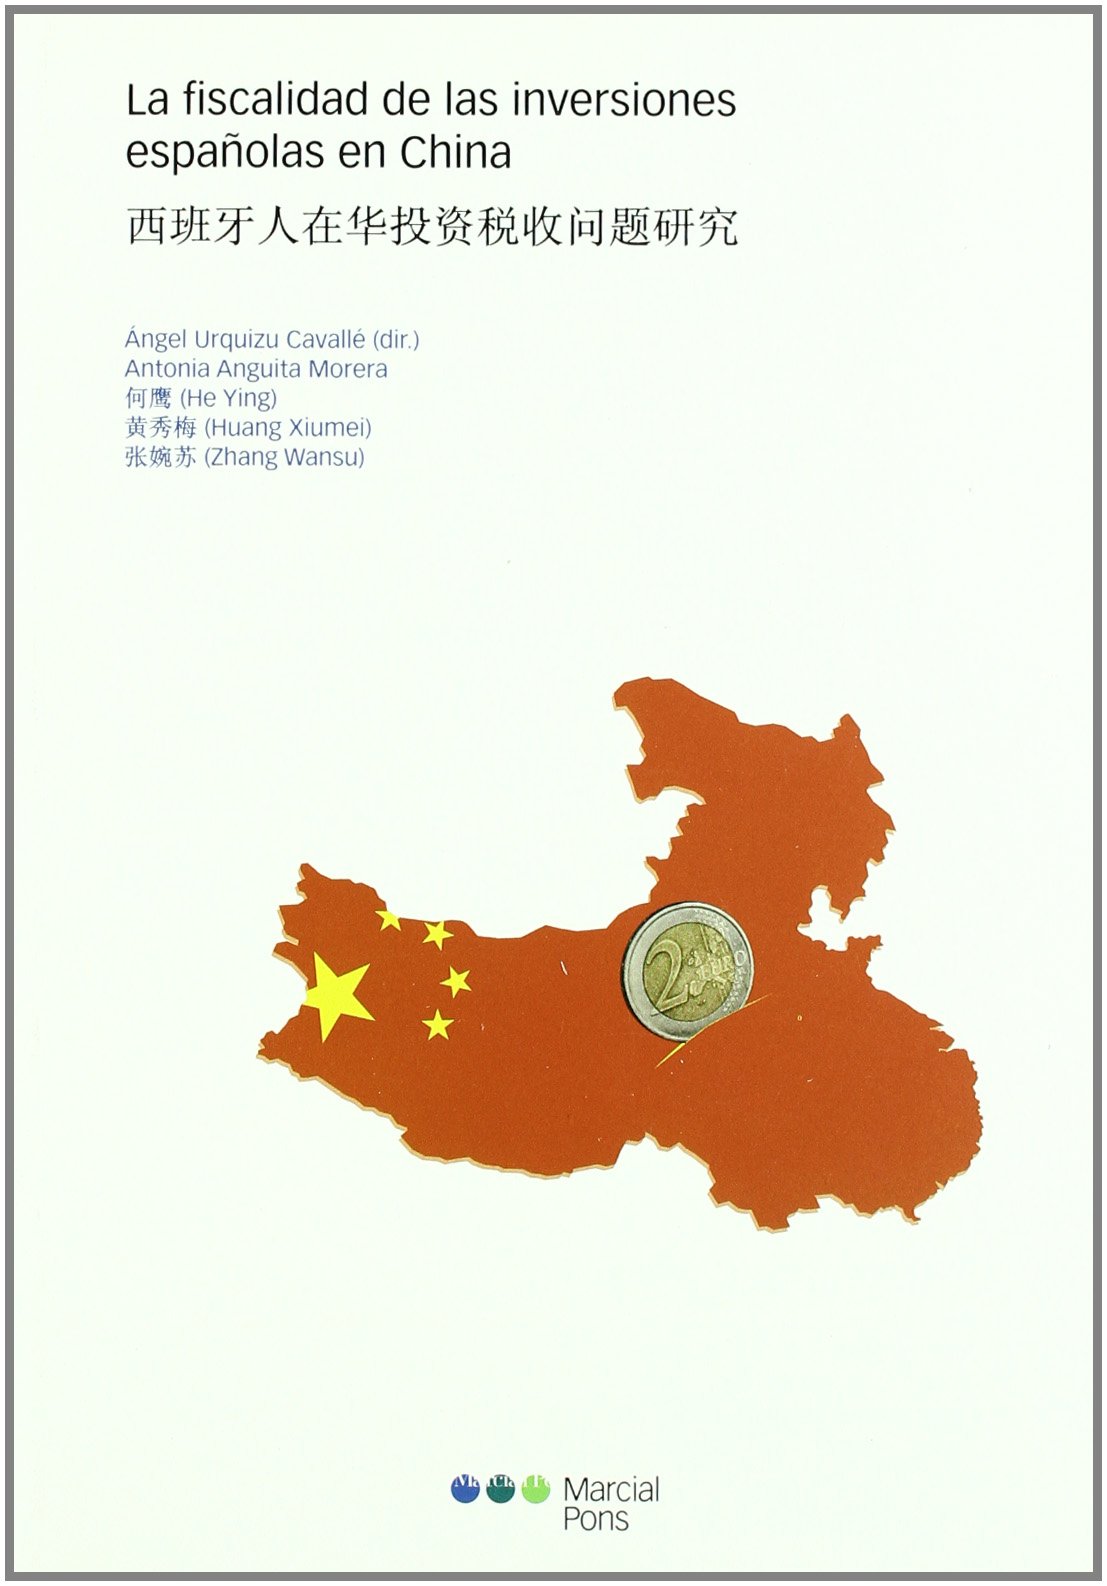 Imagen de portada del libro La fiscalidad de las inversiones españolas en China